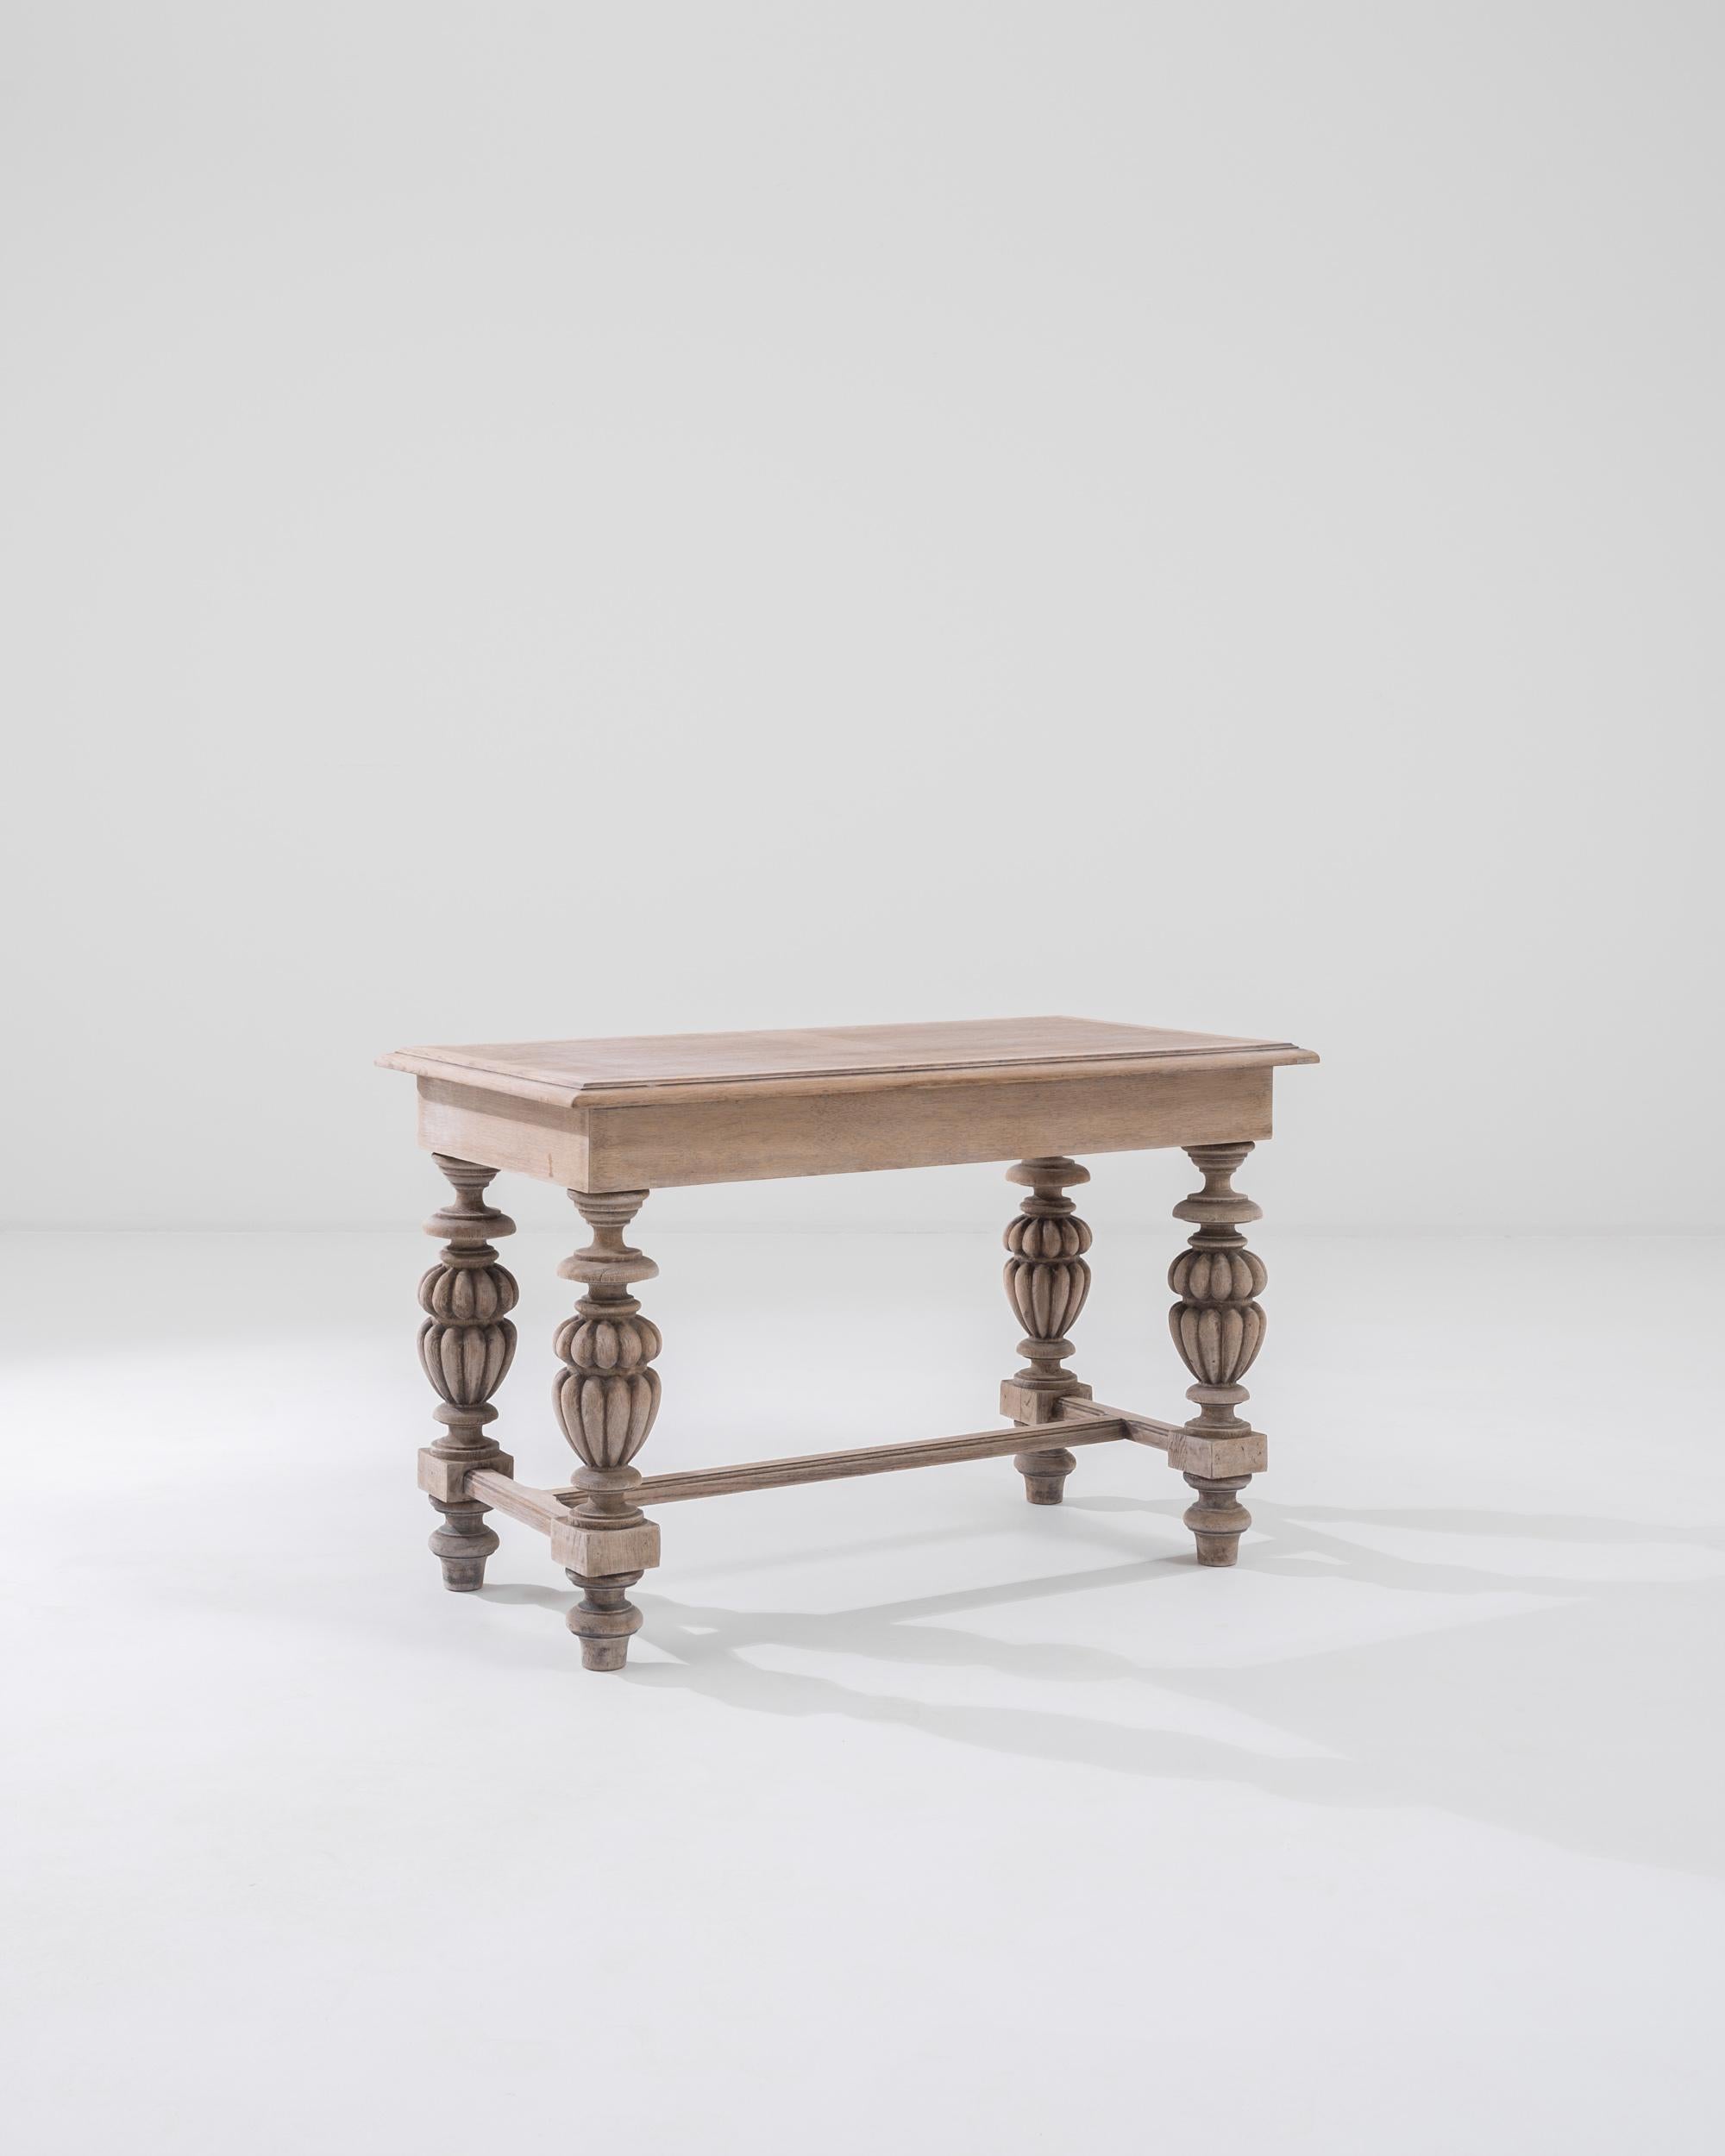 Cette table basse du 20e siècle, fabriquée en Belgique, est composée d'un plateau rectangulaire reposant sur des pieds somptueusement tournés. Méticuleusement travaillés, les pieds en forme de cucurbitacée offrent un généreux contraste avec le cadre